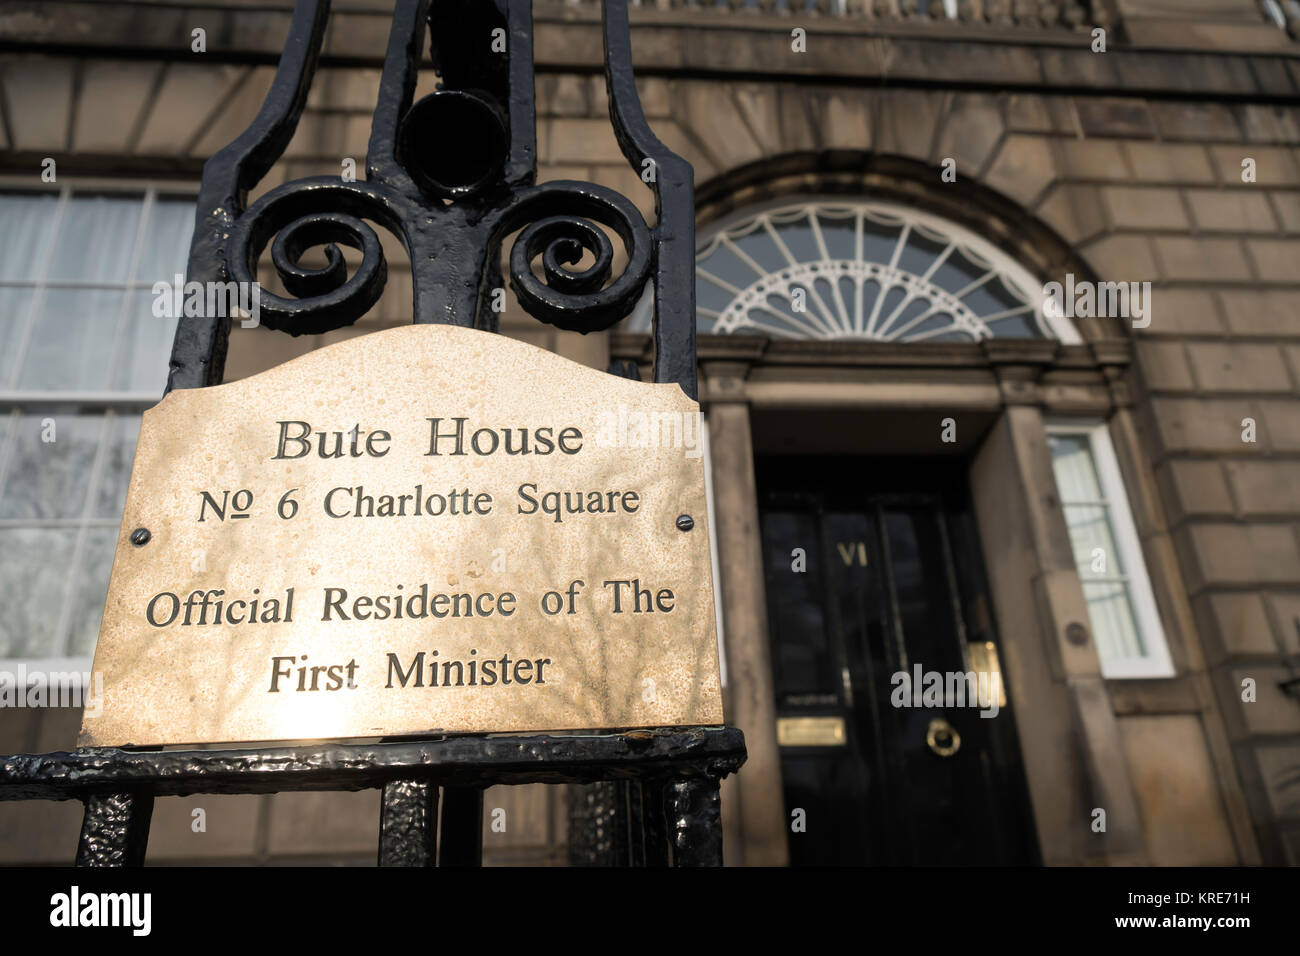 Détail de plaque constructeur de Bute House, résidence officielle du Premier Ministre de l'Écosse à Charlotte Square, Édimbourg, Écosse, Royaume-Uni Banque D'Images